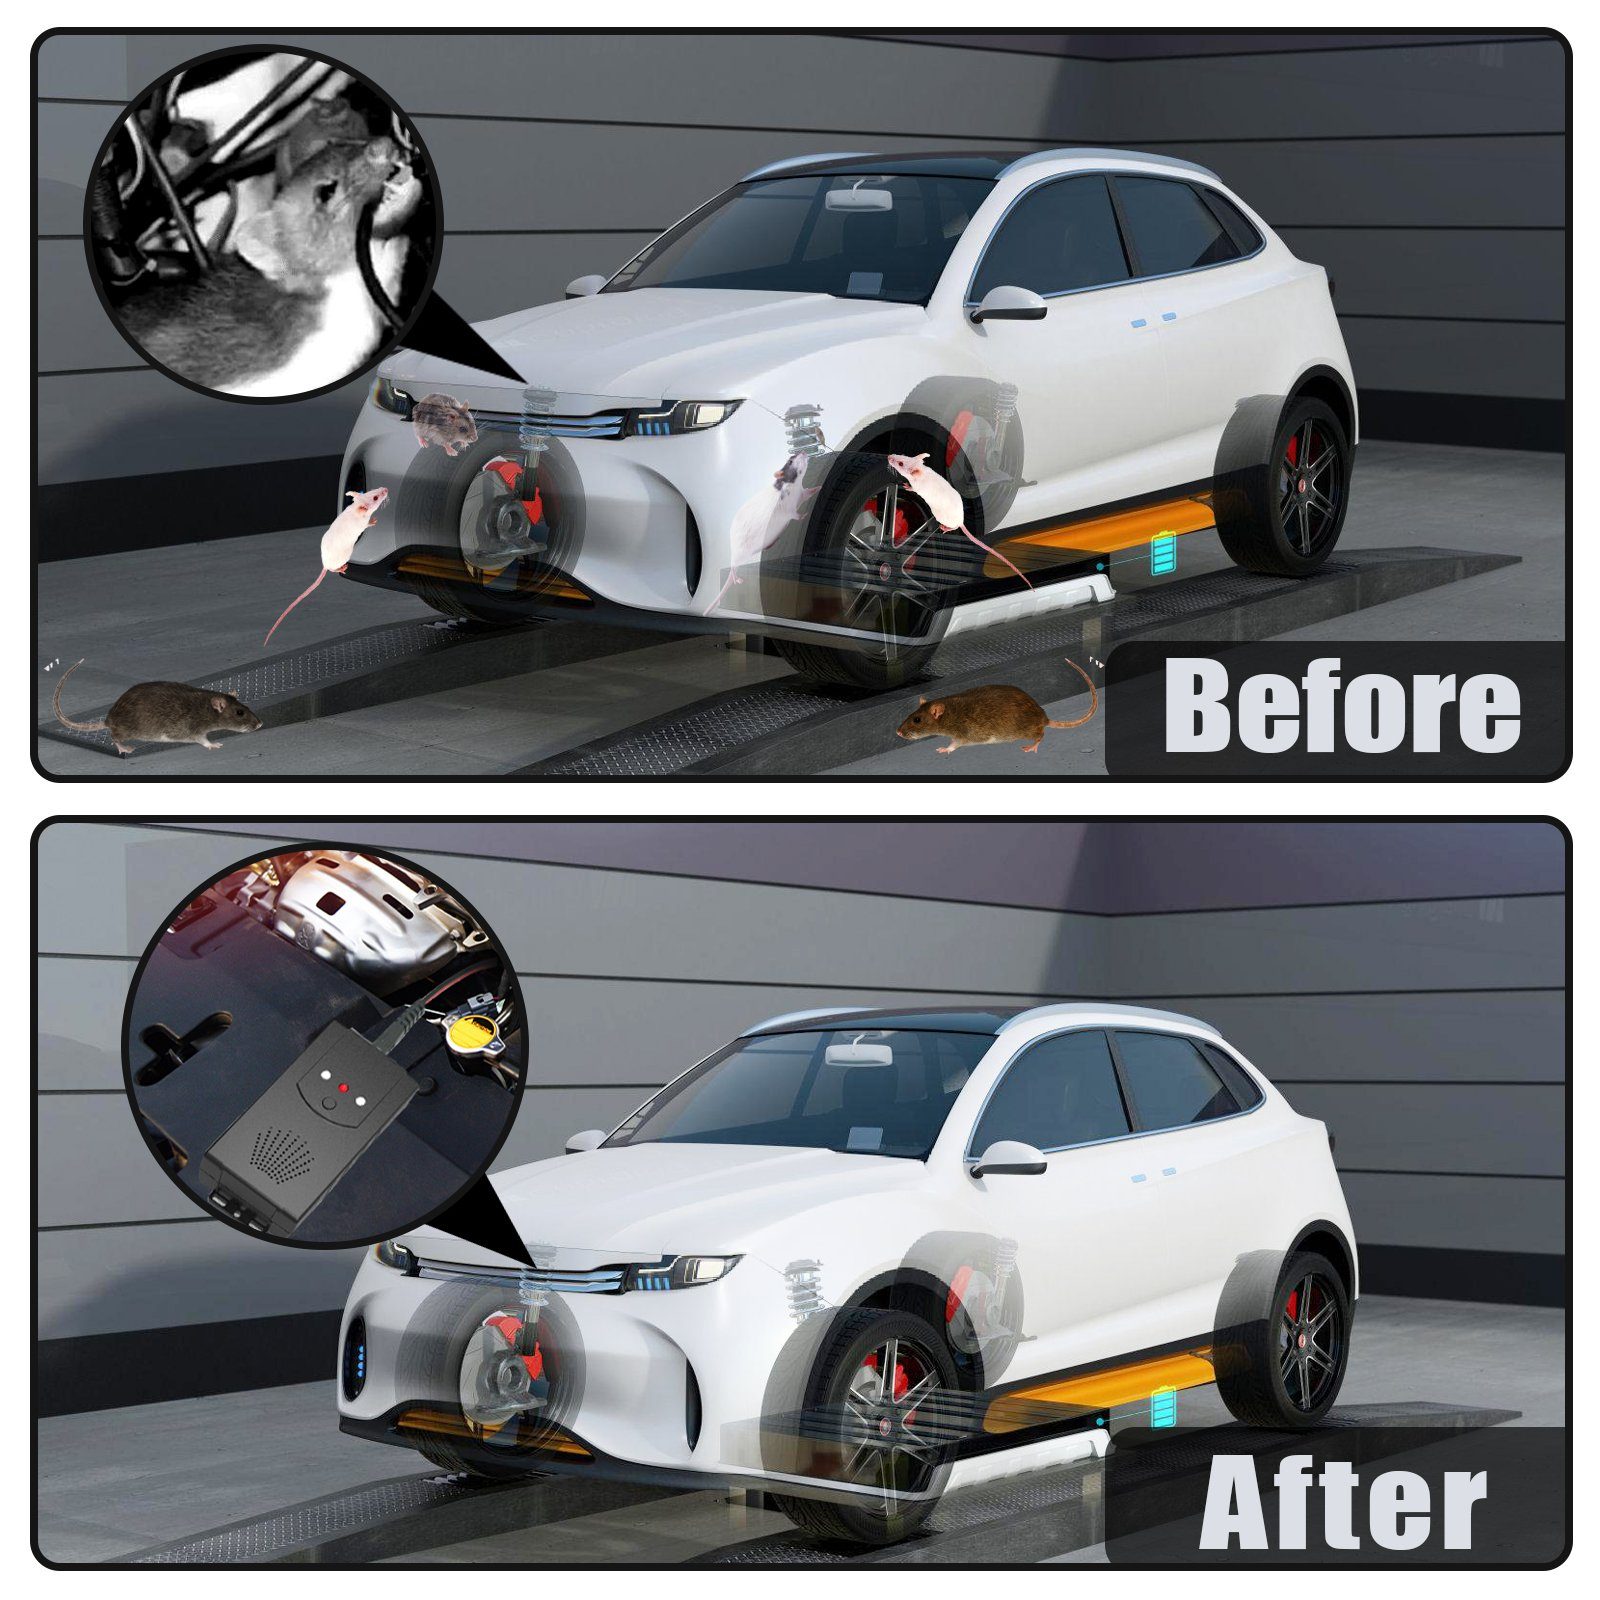 Clanmacy Ultraschall-Tierabwehr Marderschutz Marderschreck Auto, Effektive  Marderabwehr Auto mit Ultraschall und LED-Blitzlichtfunktion, per USB oder